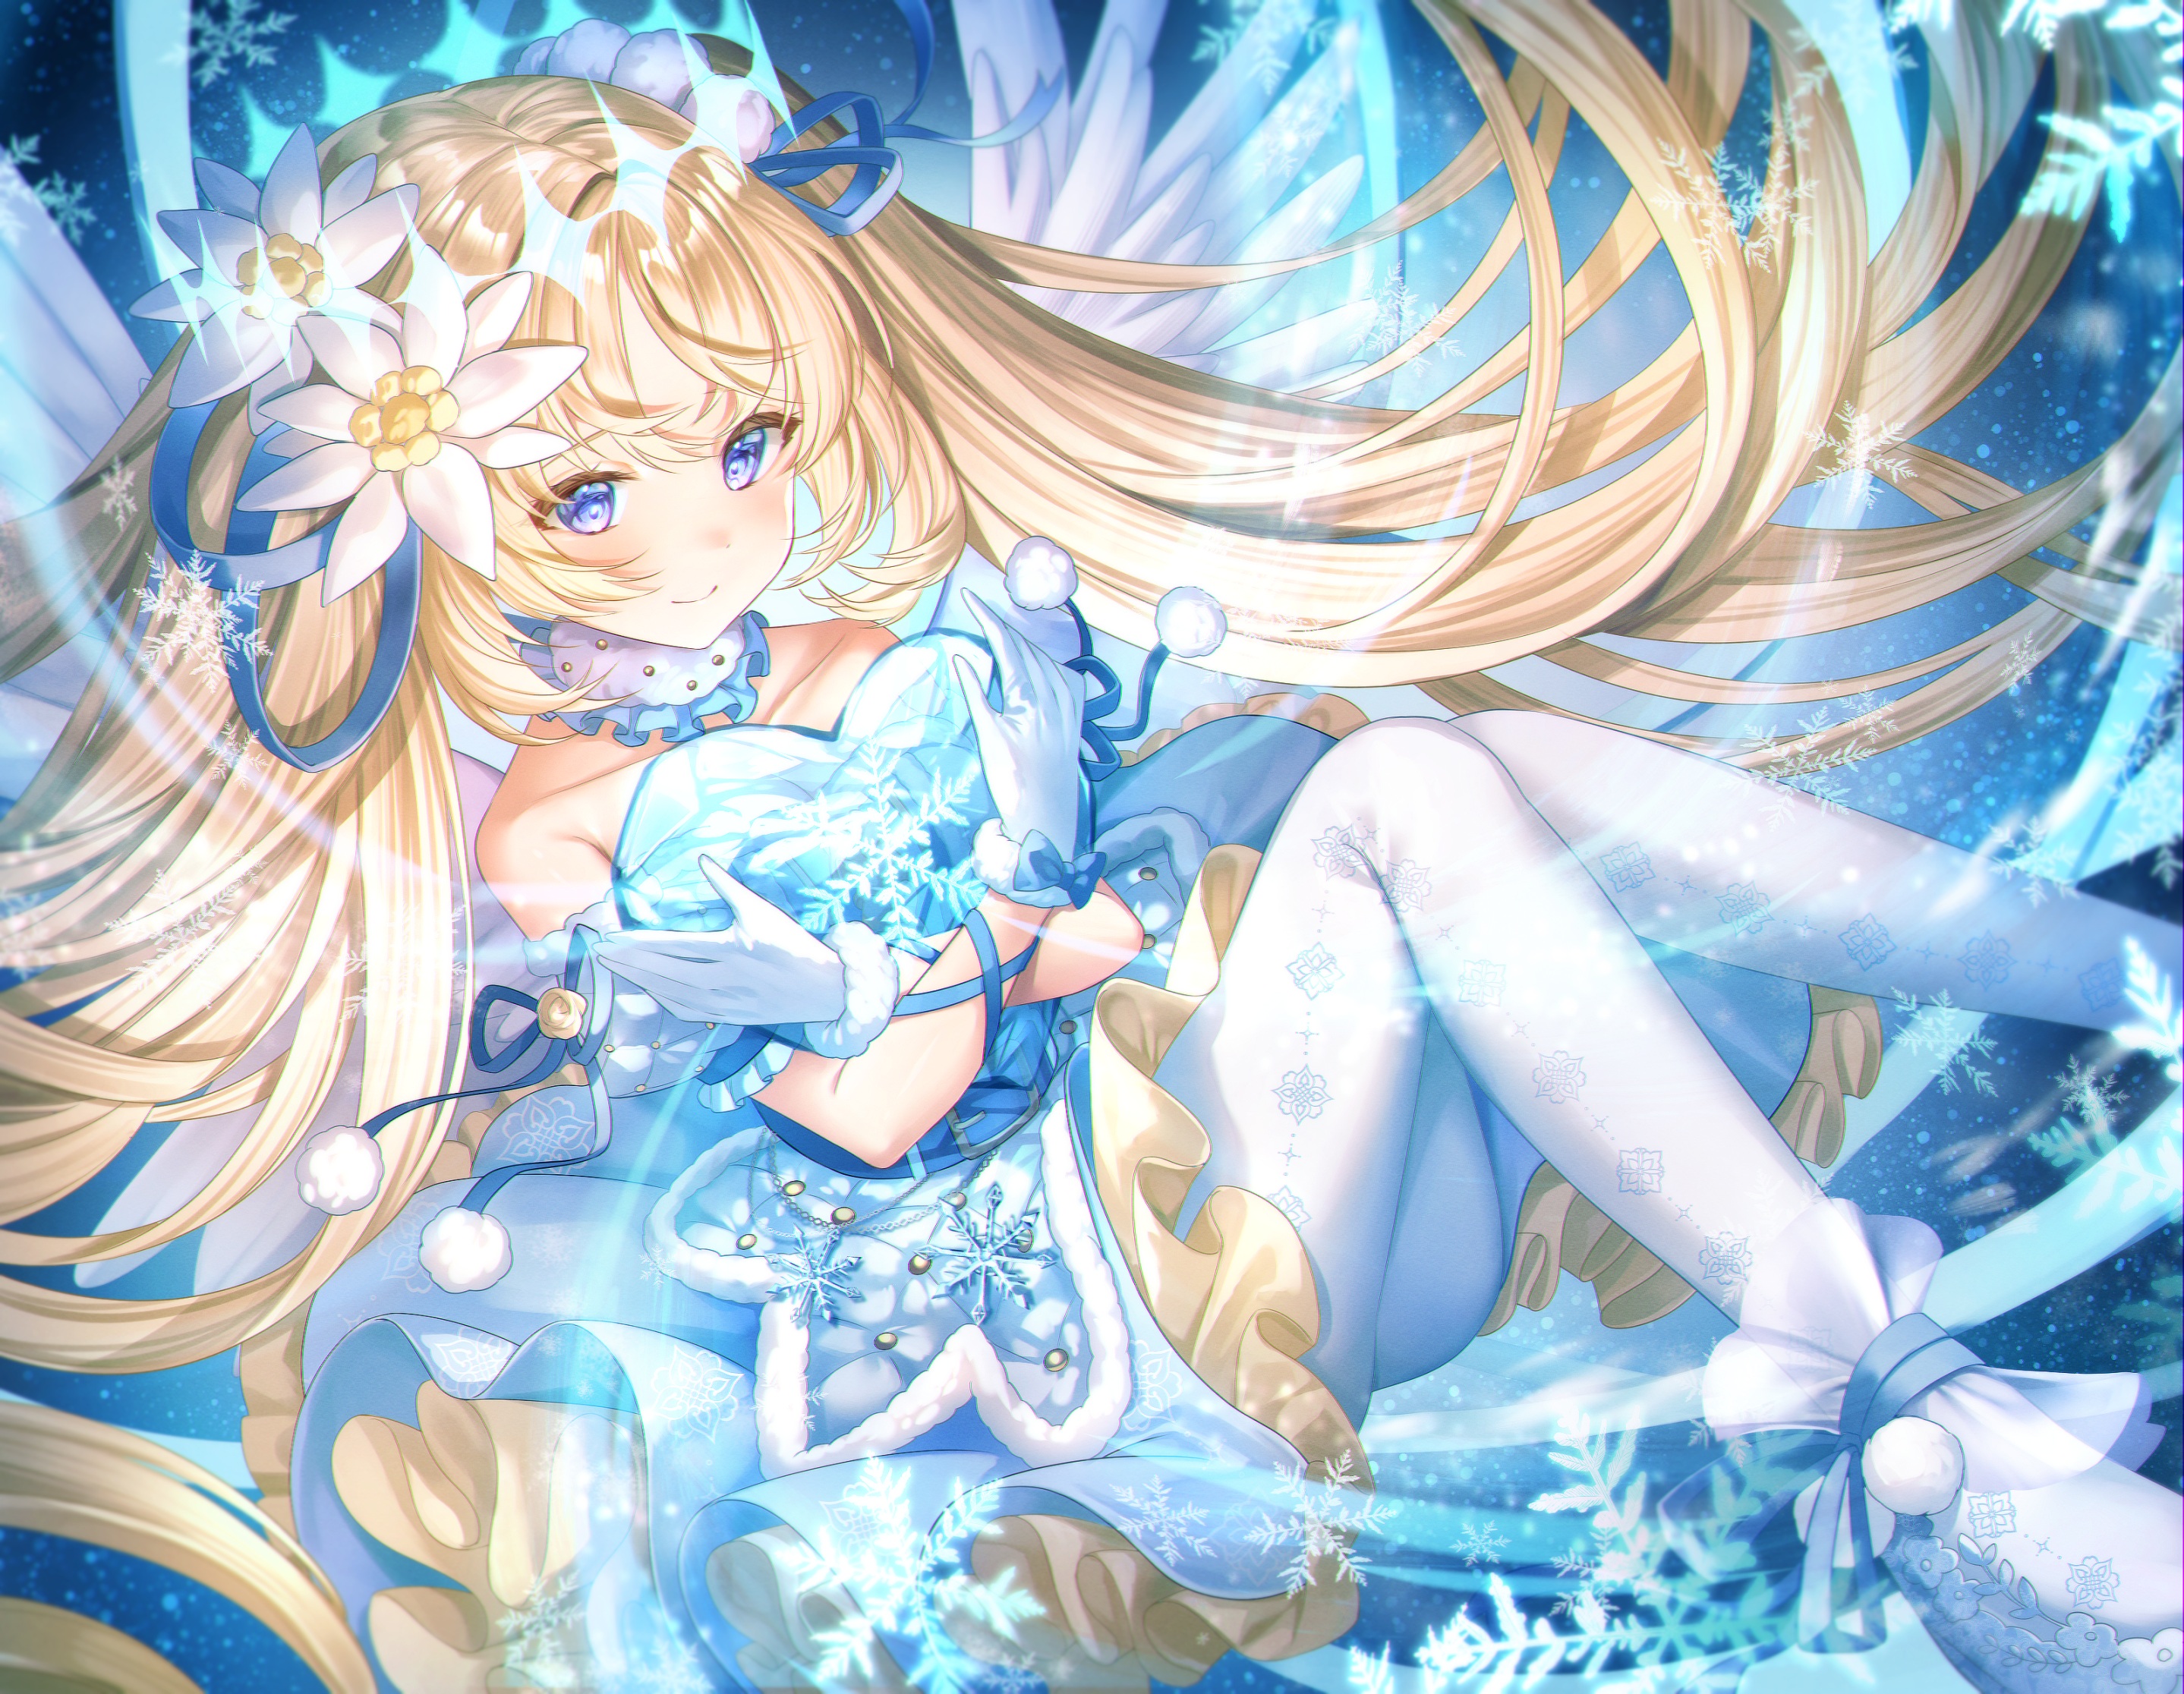 Anime 2877x2232 anime anime girls blonde blue eyes flower in hair gloves long hair snowflakes smiling